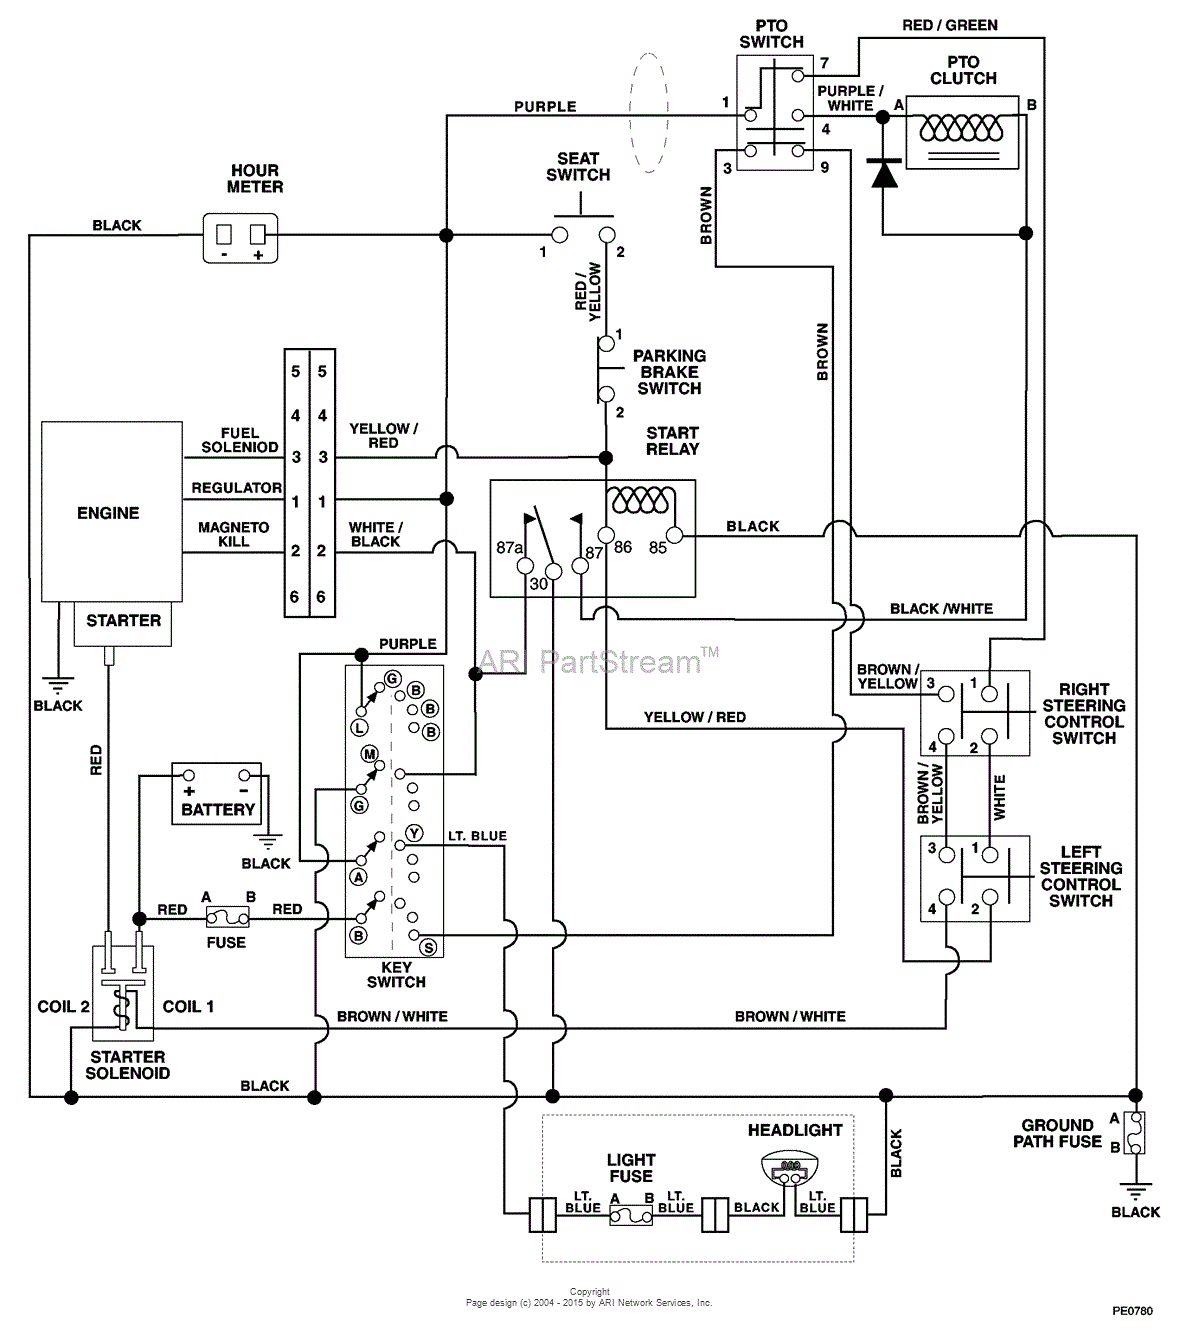 arco wiring diagrams wiring diagram datasource arco wiring diagram manual e book arco wiring diagrams